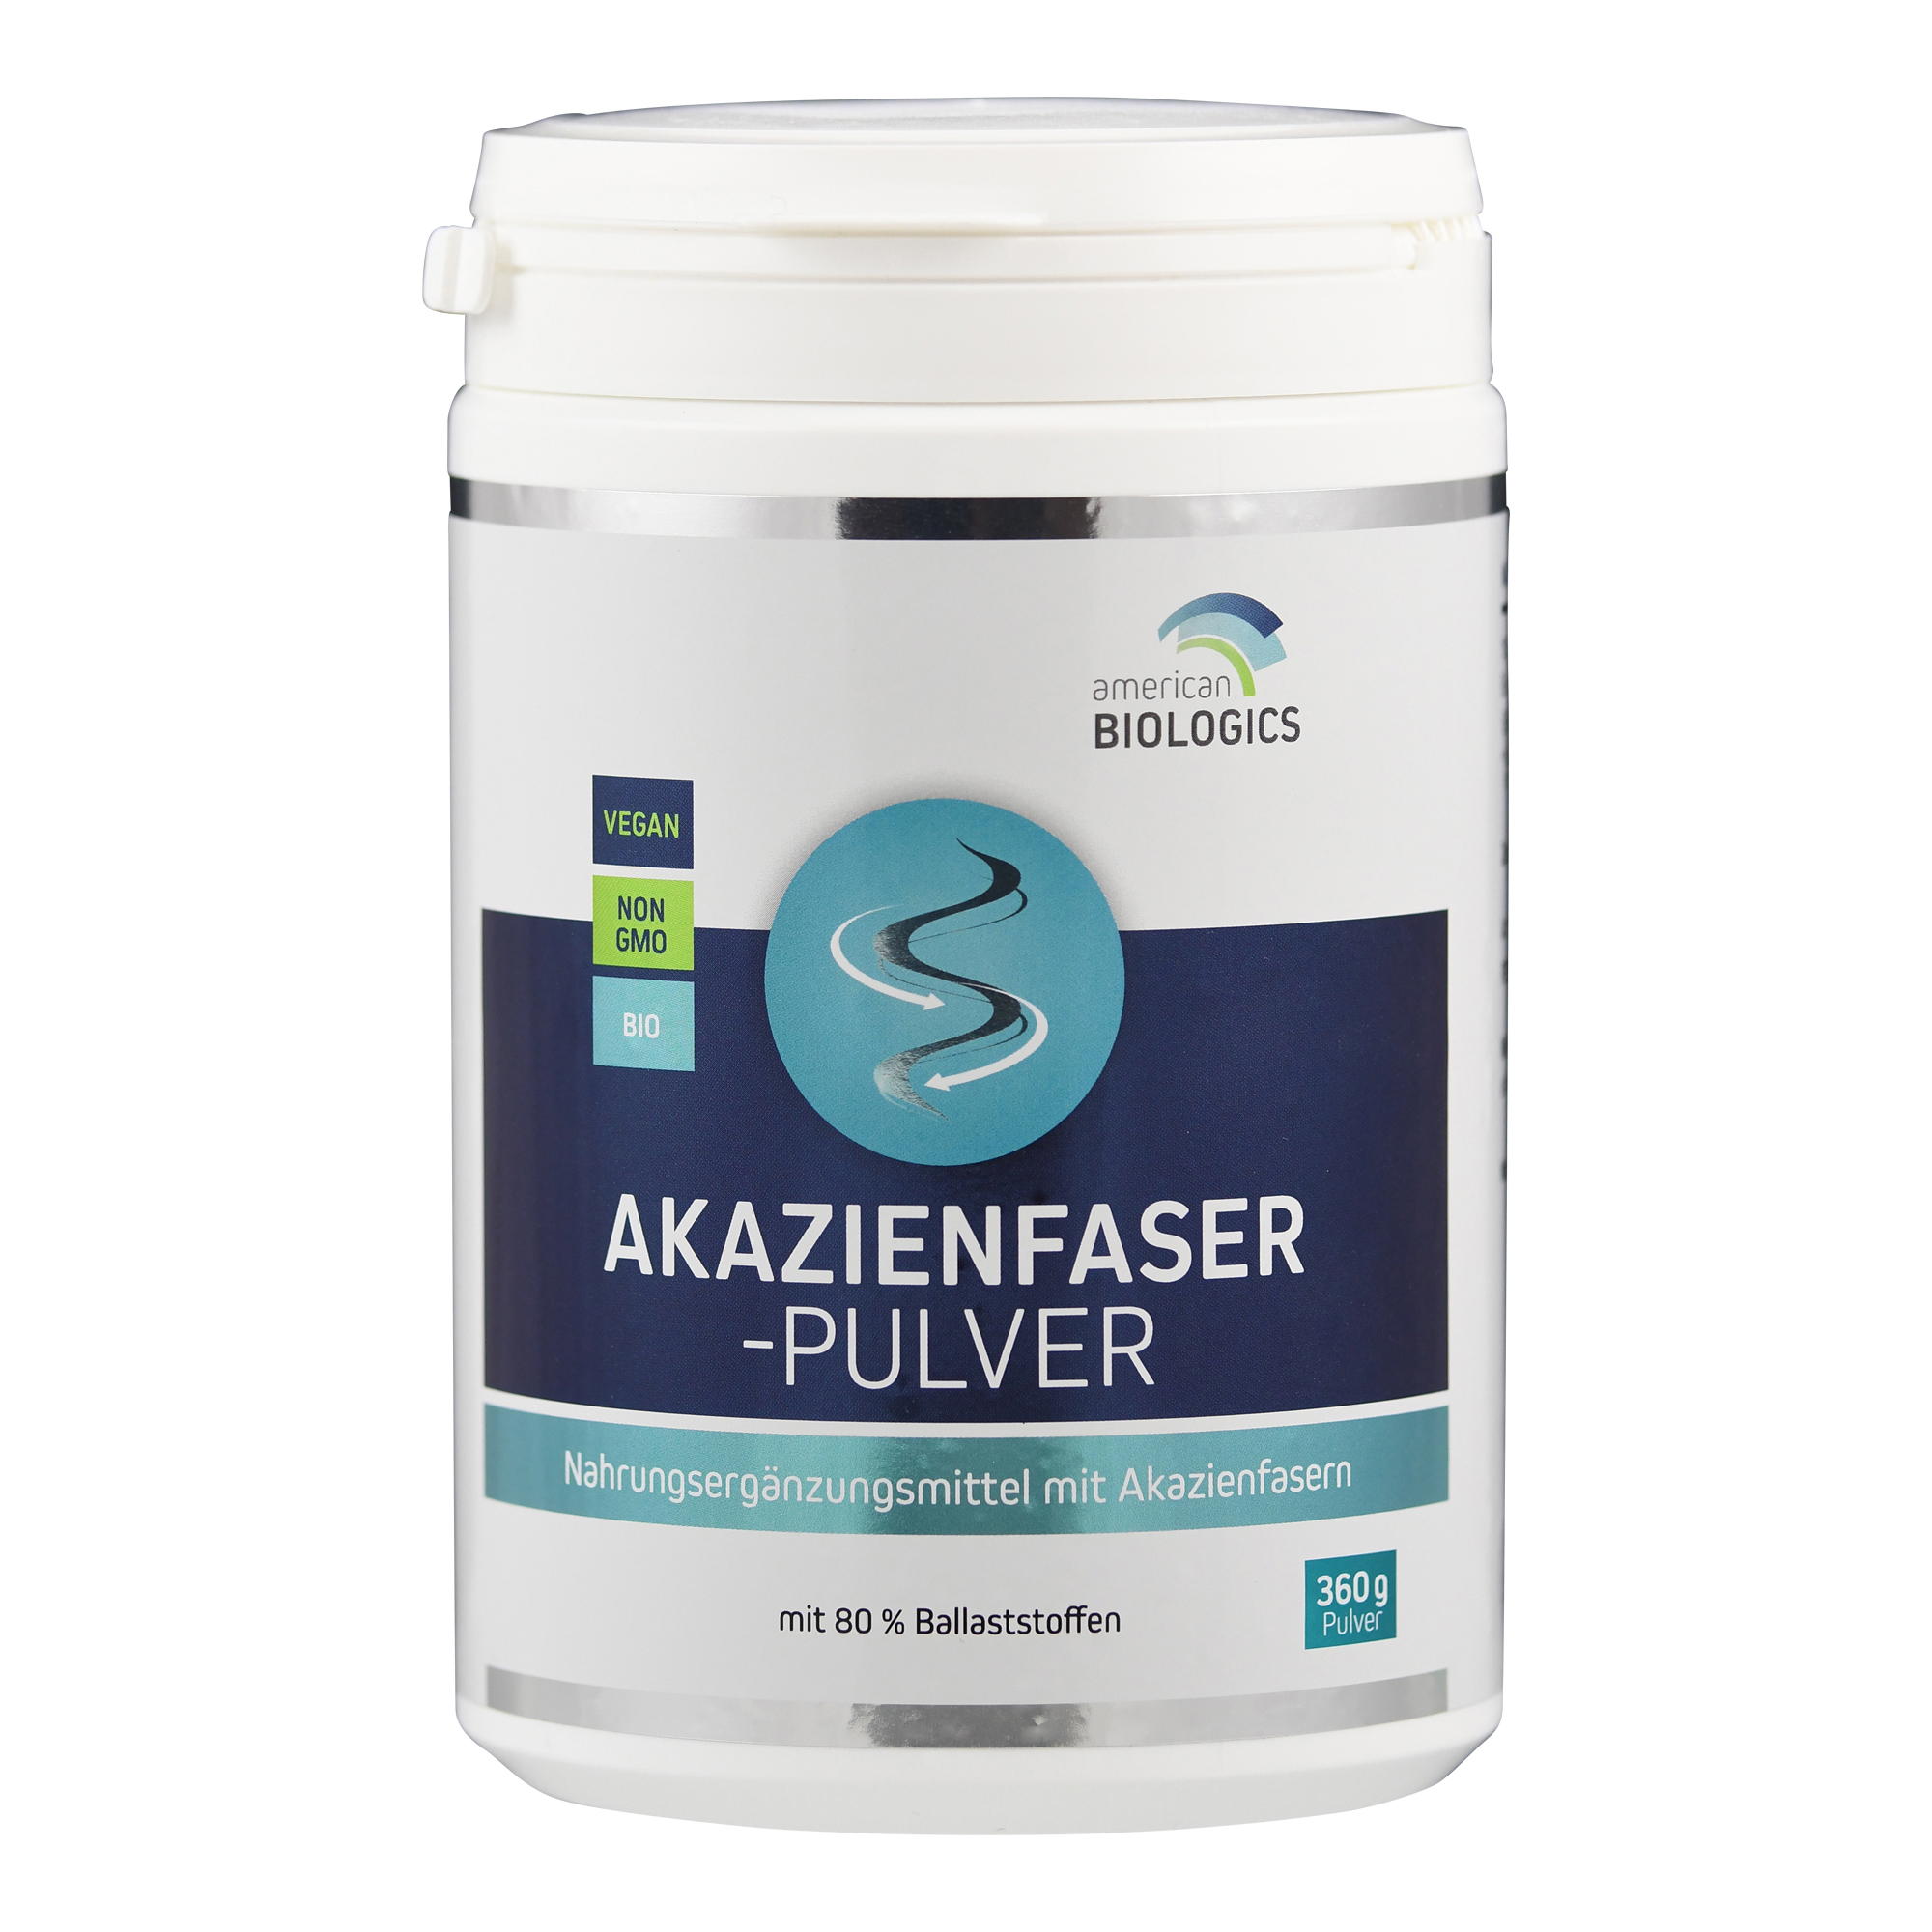 Akazienfaser-Pulver (Bio-Certified by Ecocert SA F 32600) von American Biologics.